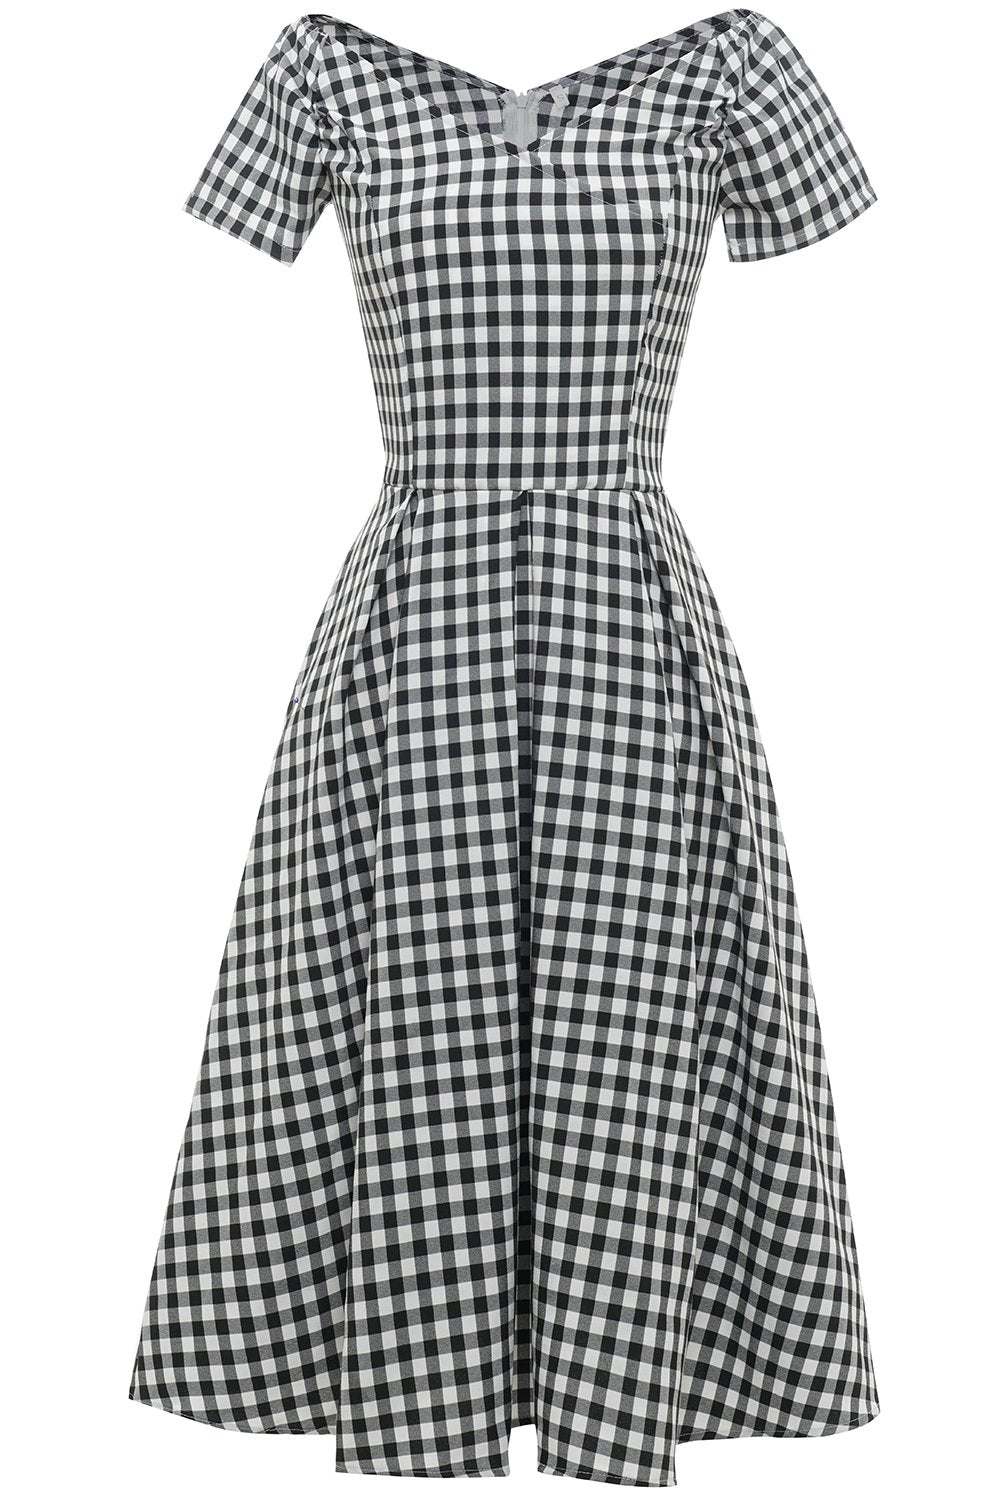 Vestido a cuadros en blanco y negro Vintage de la década de 1950